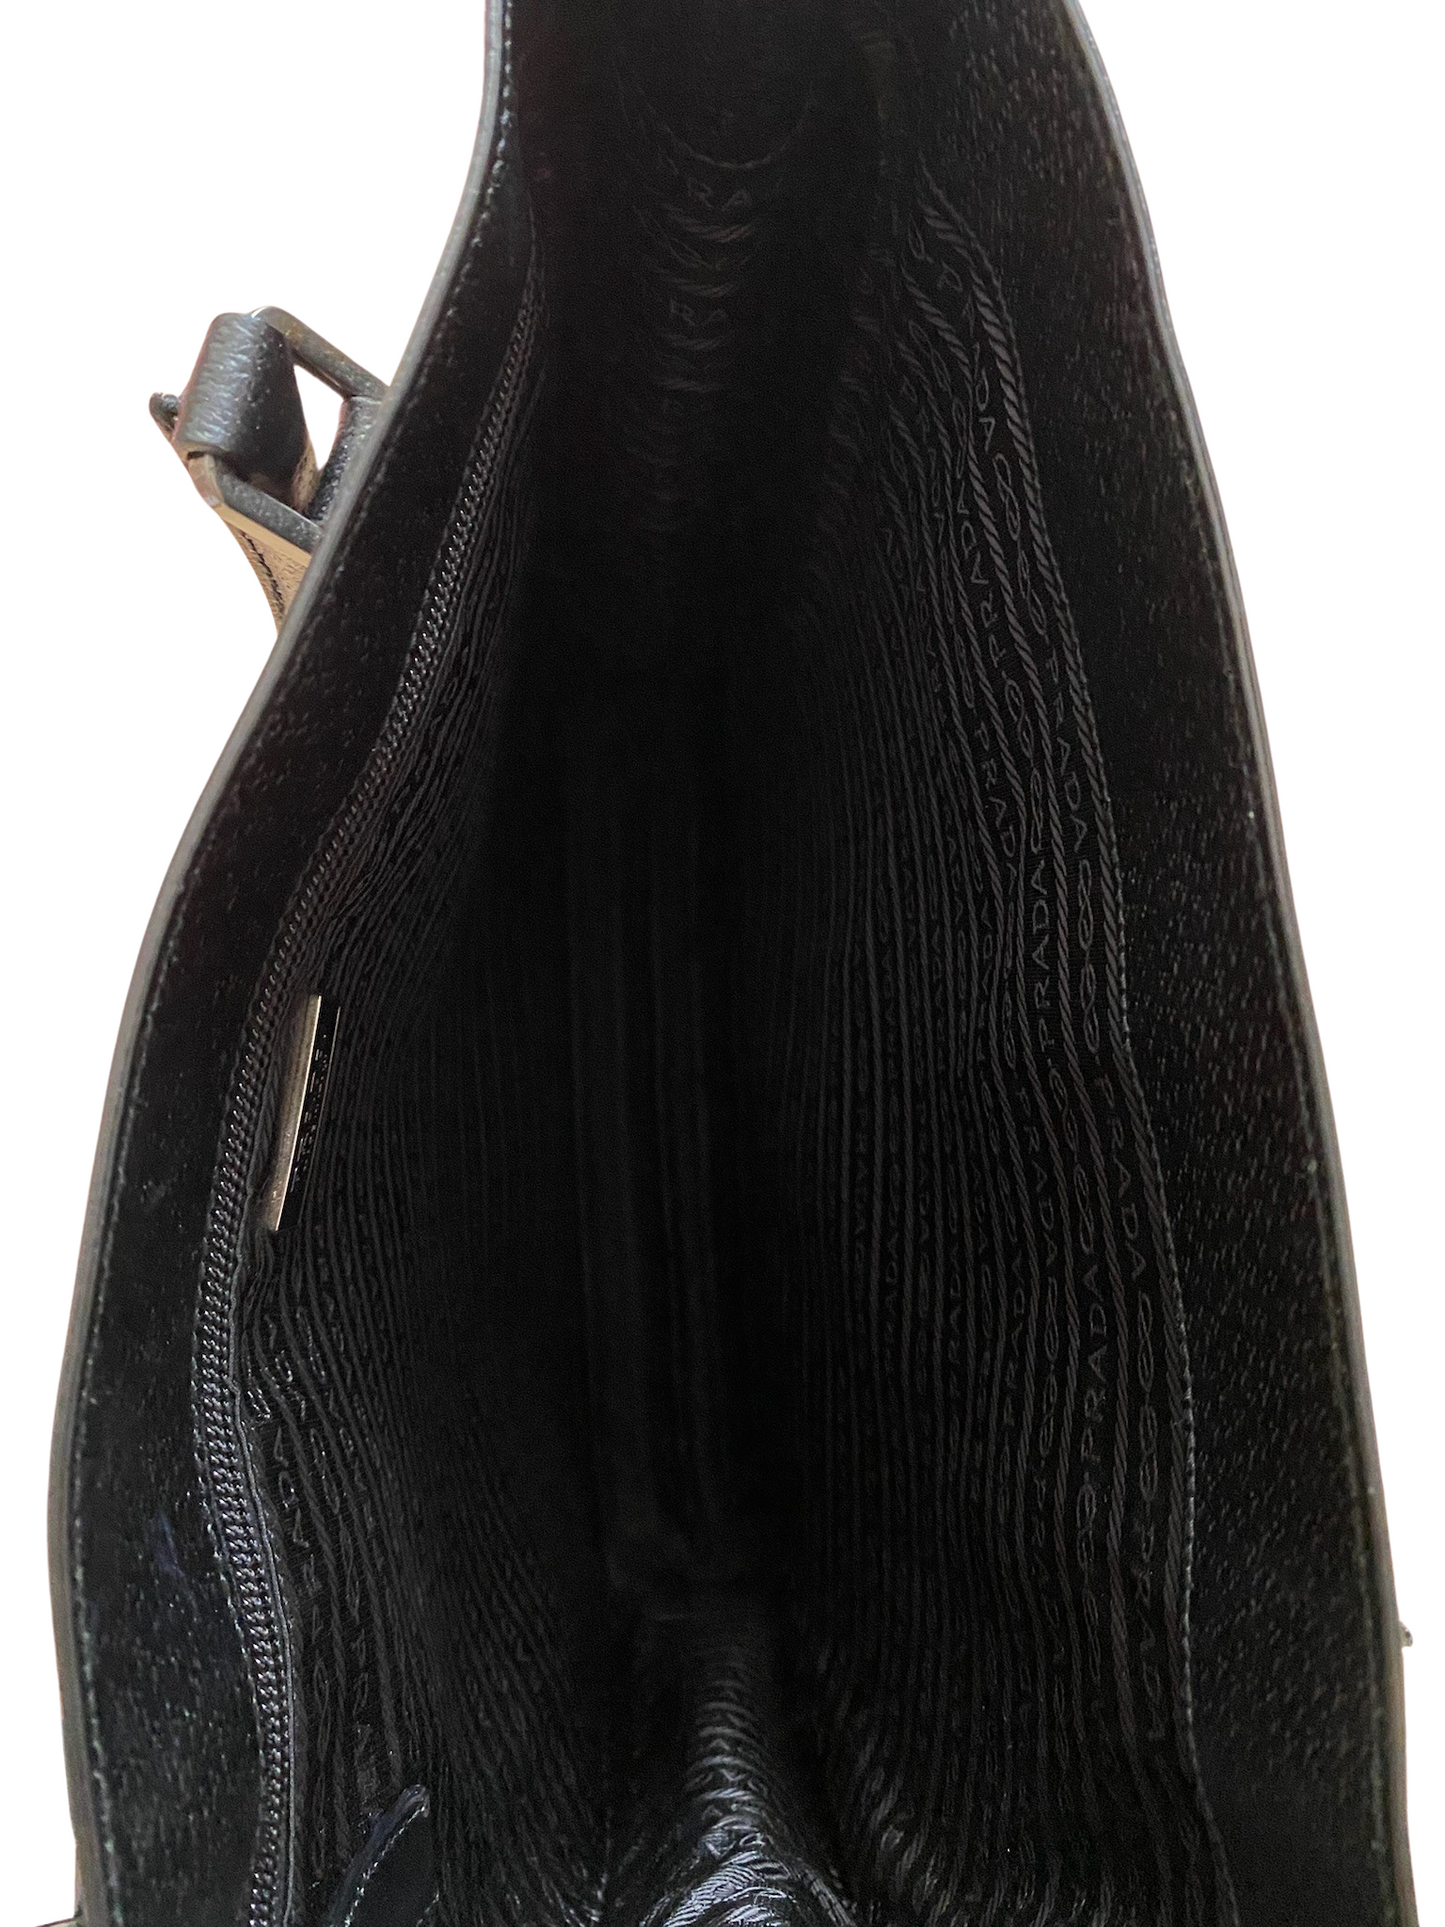 Prada Galleria Black Leather Tote Bag